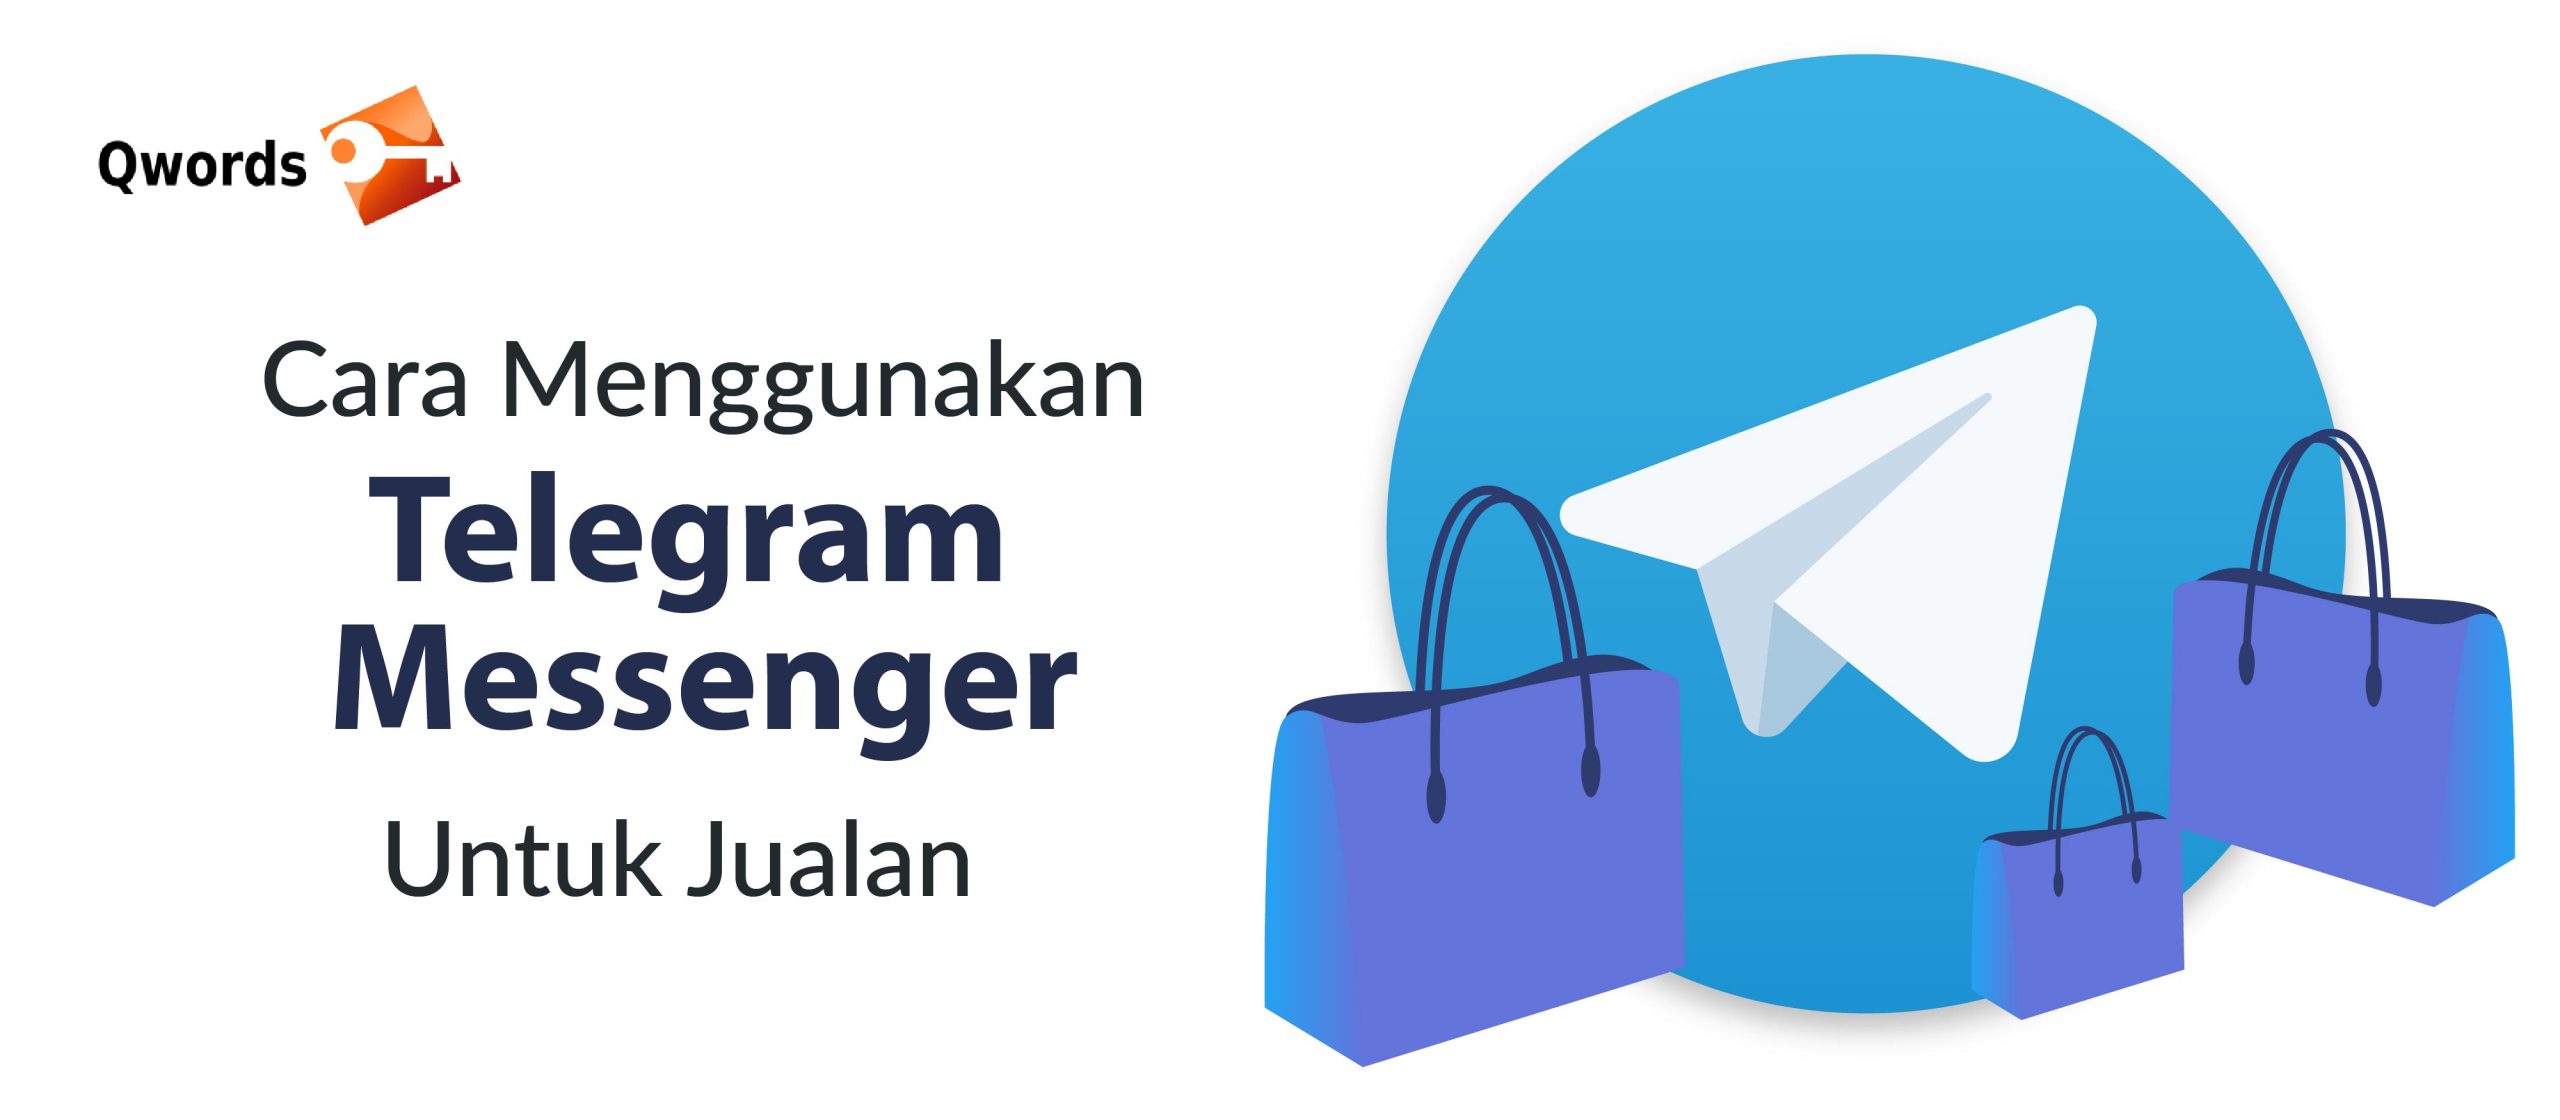 Cara Menggunakan Telegram Messenger Untuk Jualan